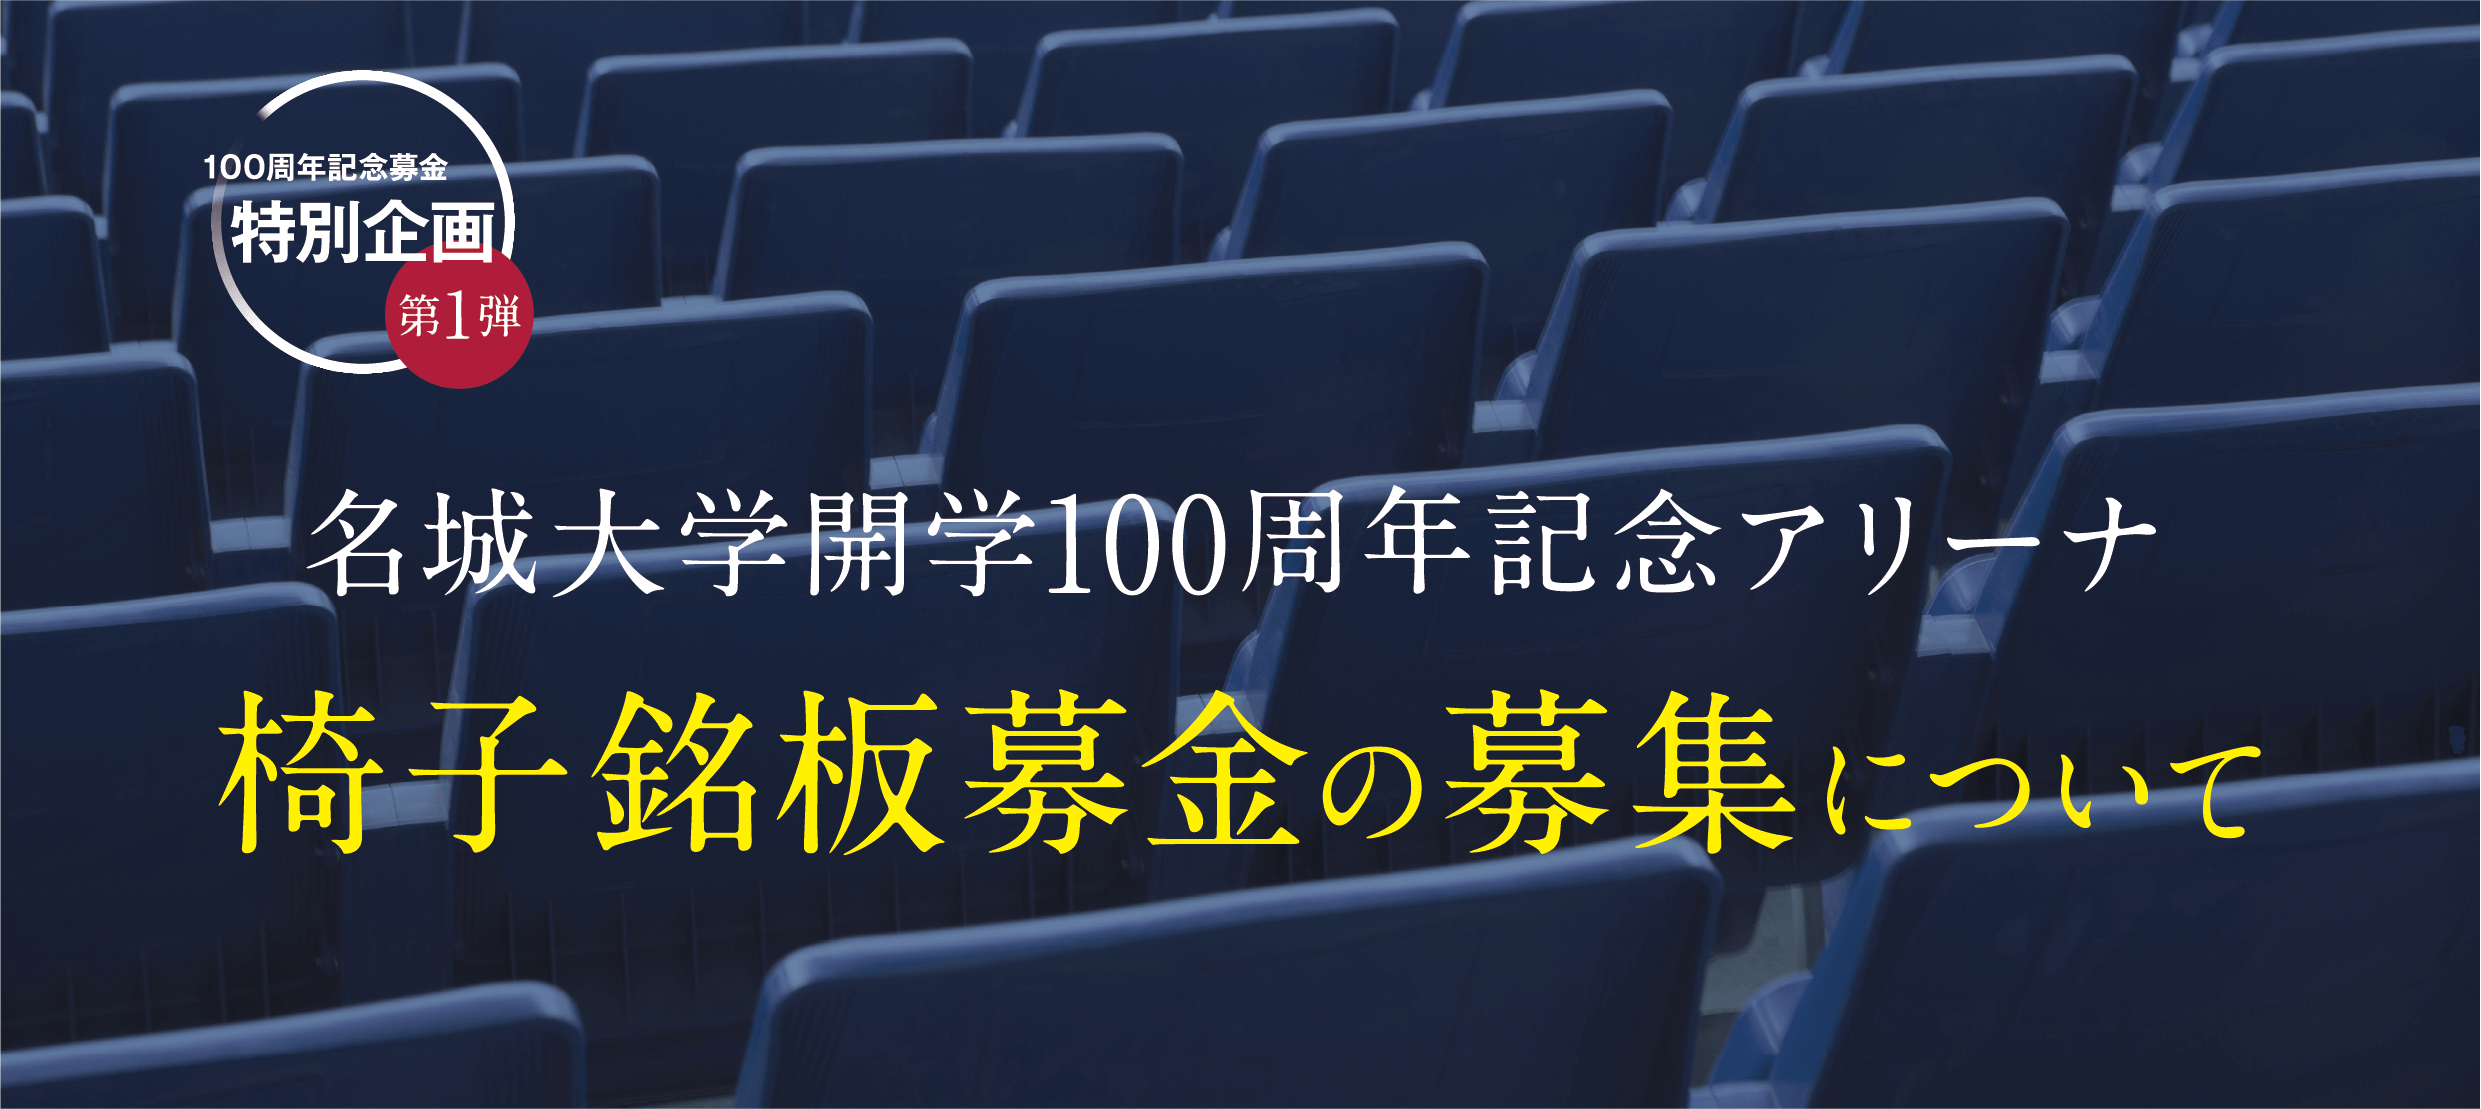 名城大学開学100周年記念アリーナ 椅子銘板募金の募集について